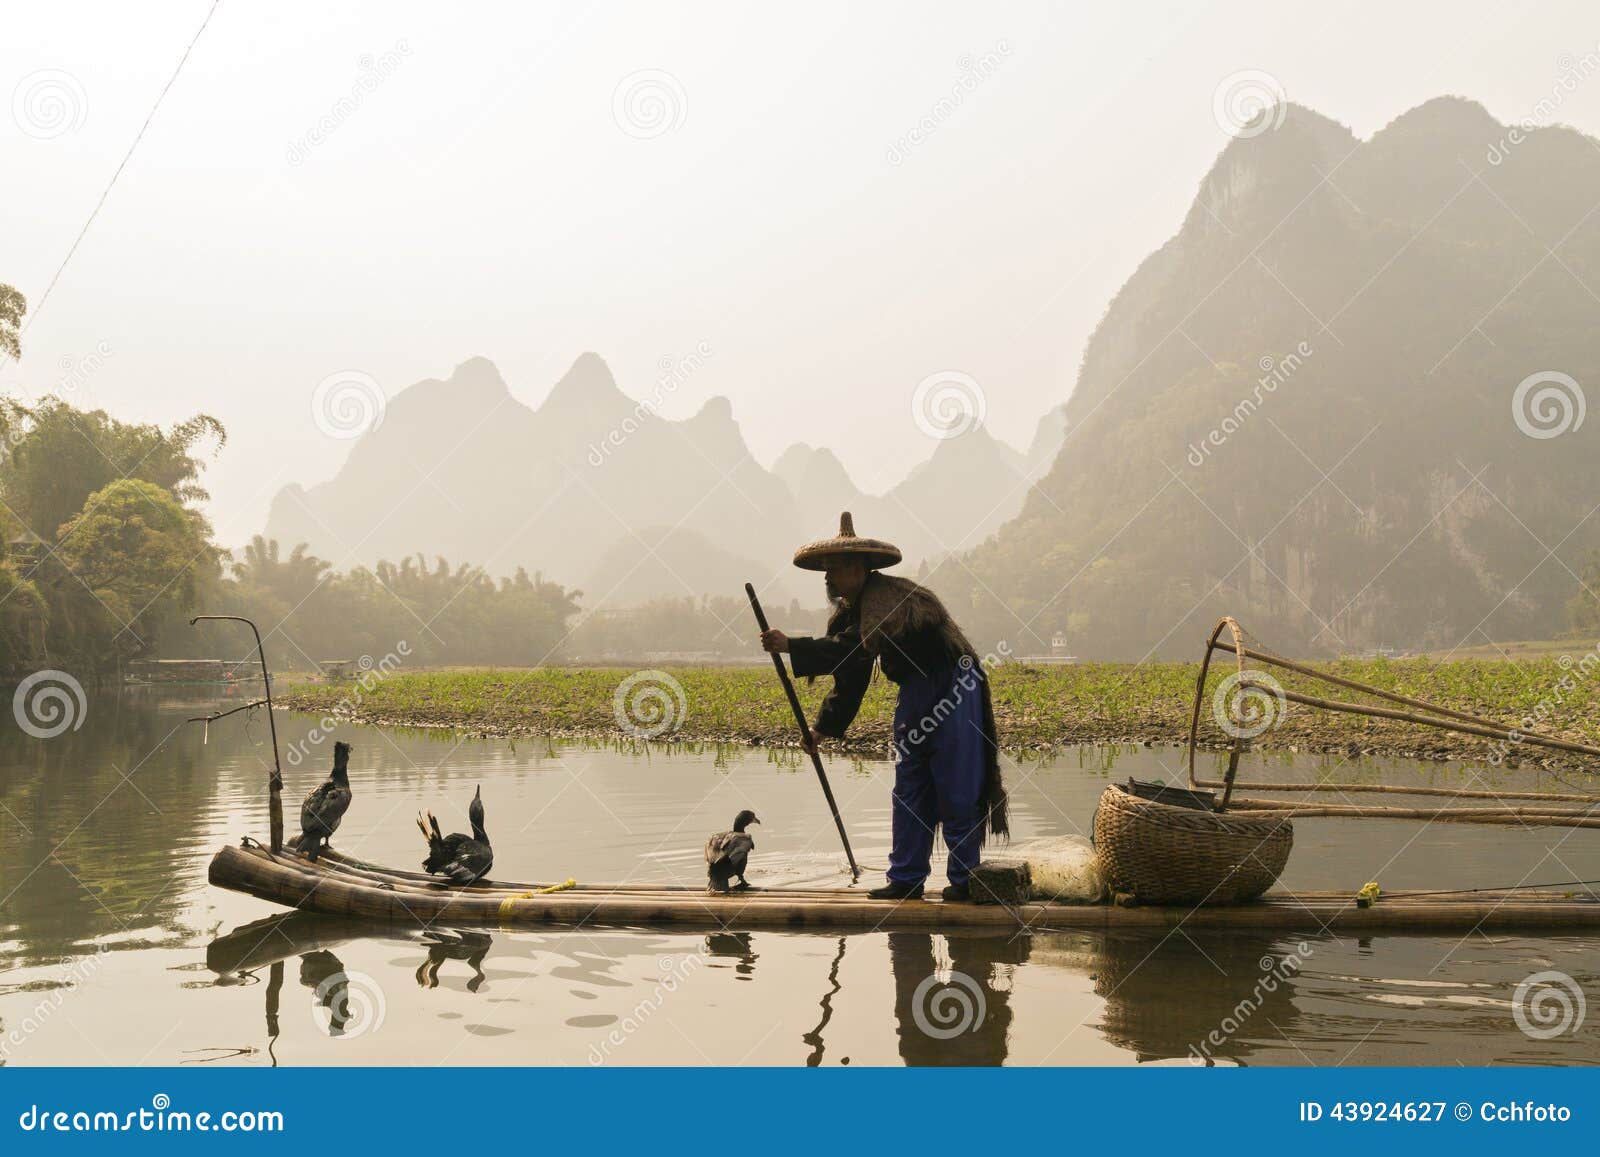 Река ли рыбалка на реке. Гуйлинь Китай рыбалка с бакланами. Рыбак с бакланом фото. Река ли вектор. My Fishing World коллекции река ли.